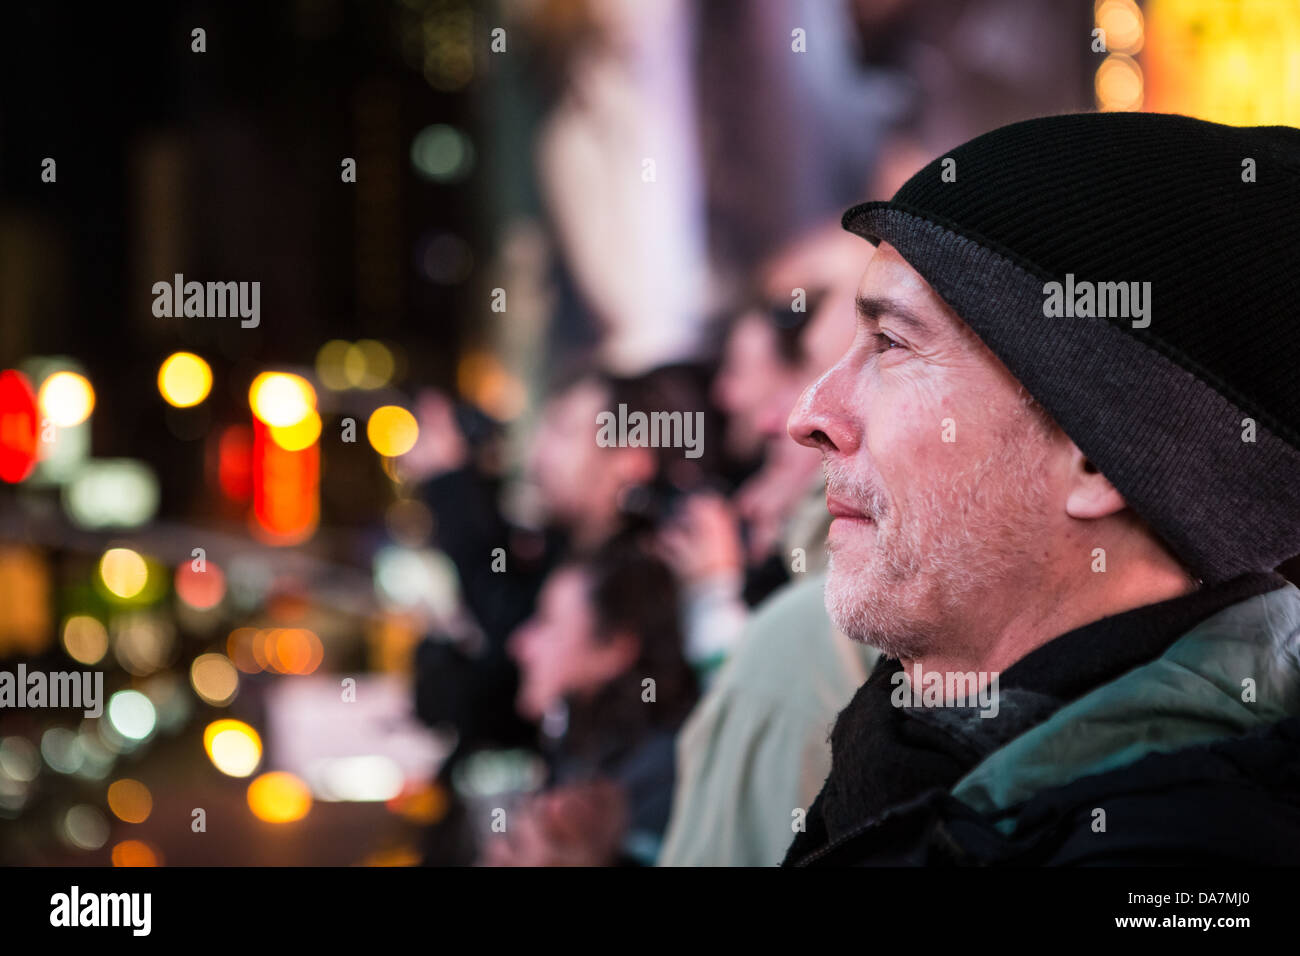 Ritratto di profilo di una Times Square turistico con le luci della città in background Foto Stock